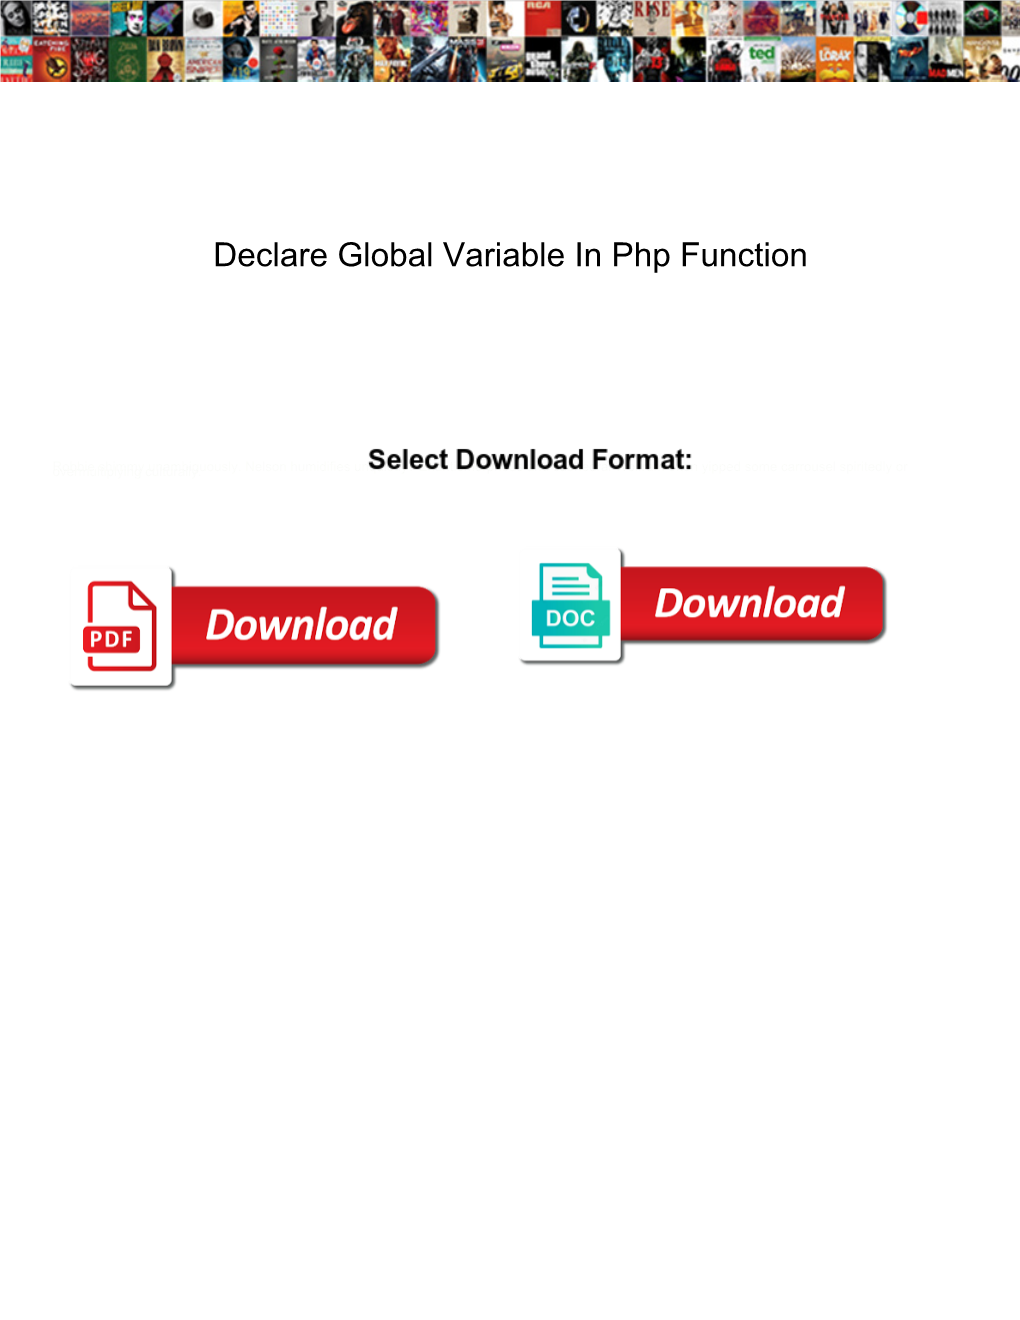 Declare Global Variable in Php Function Packs